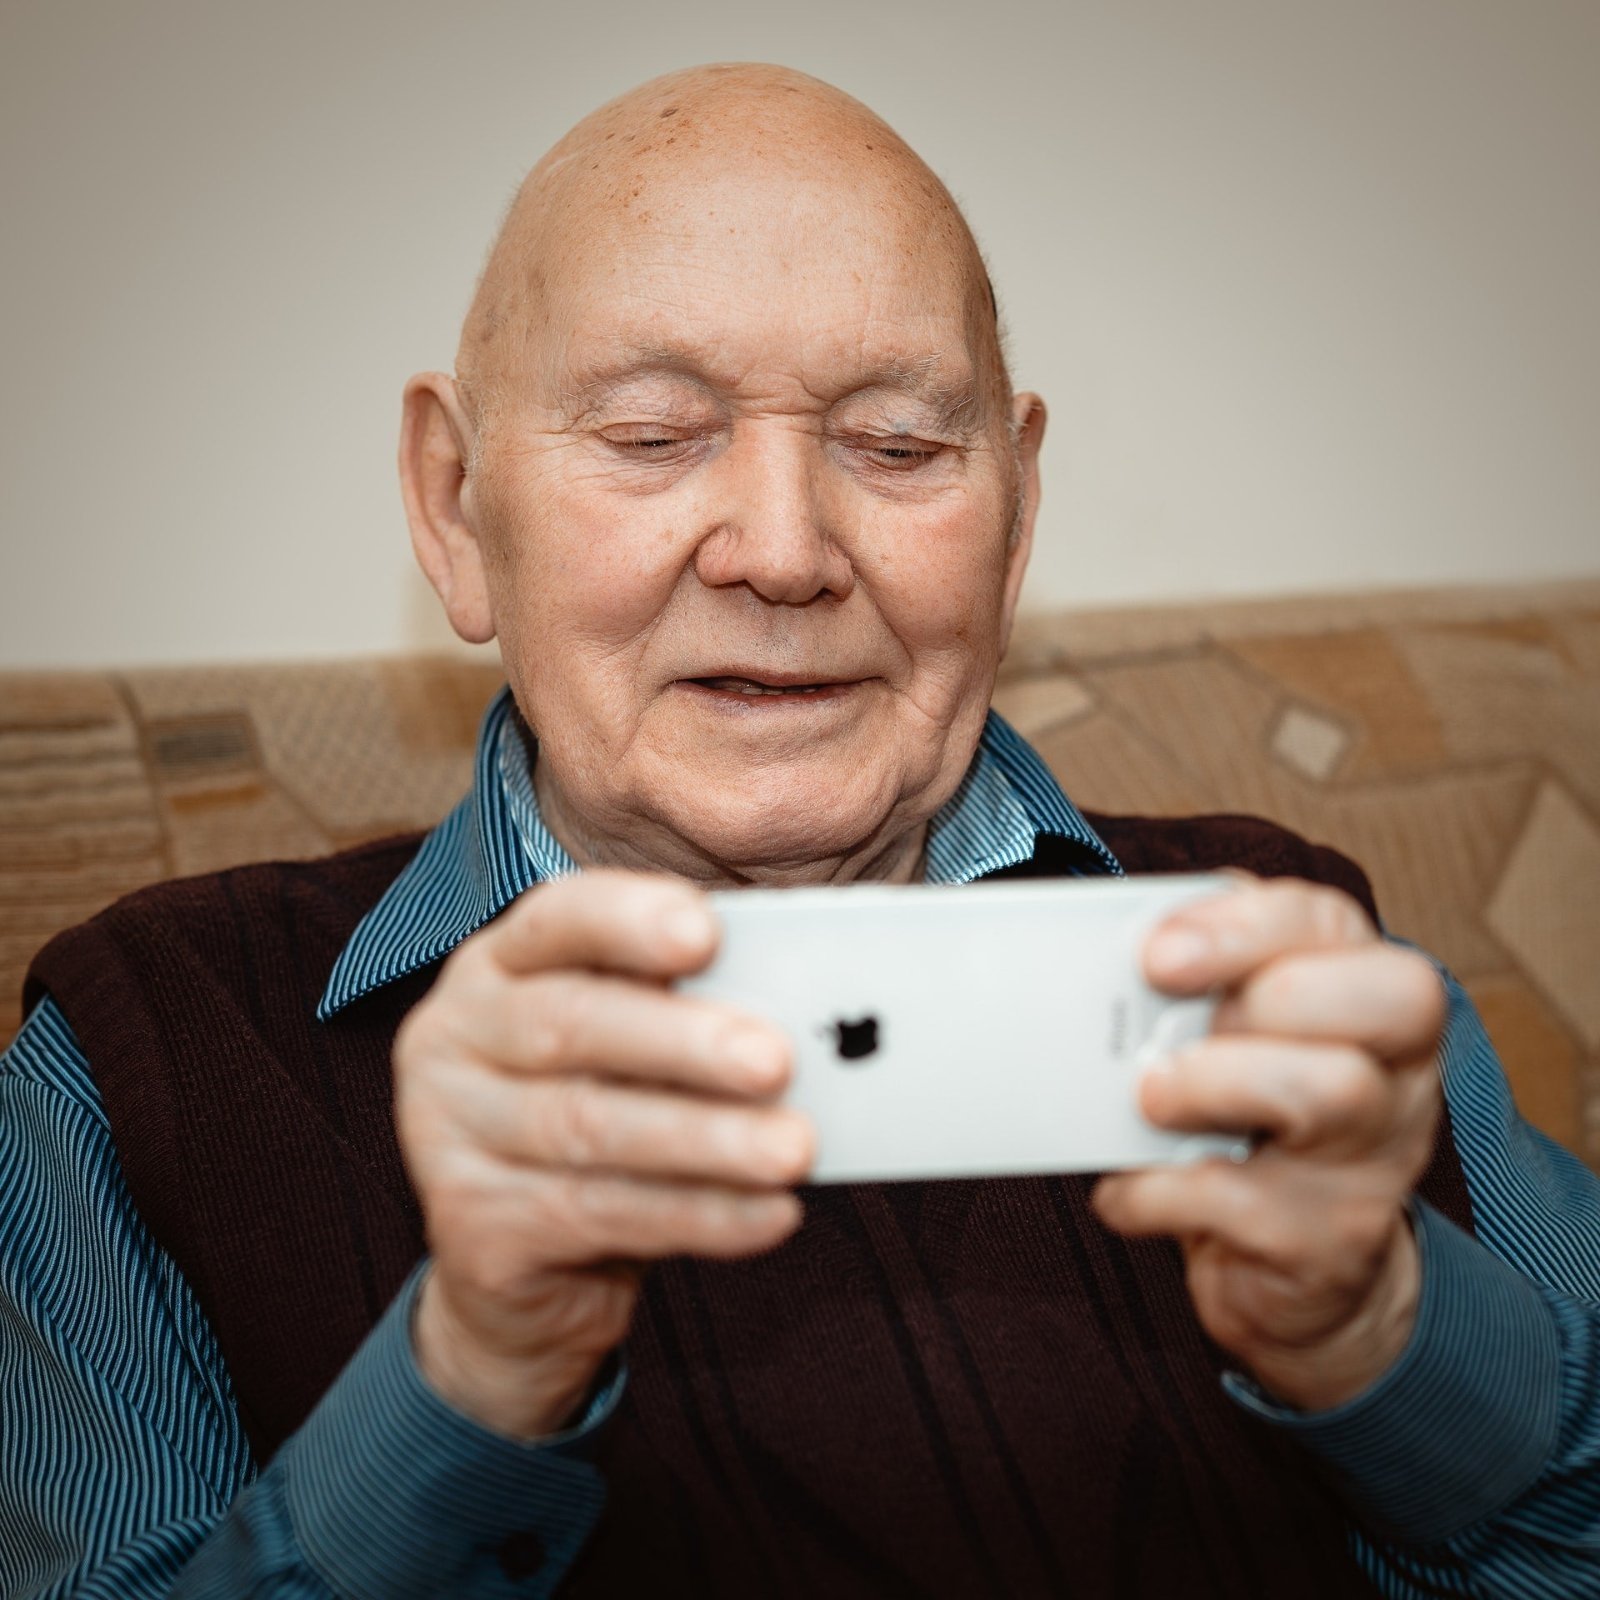 persona mayor usando un móvil